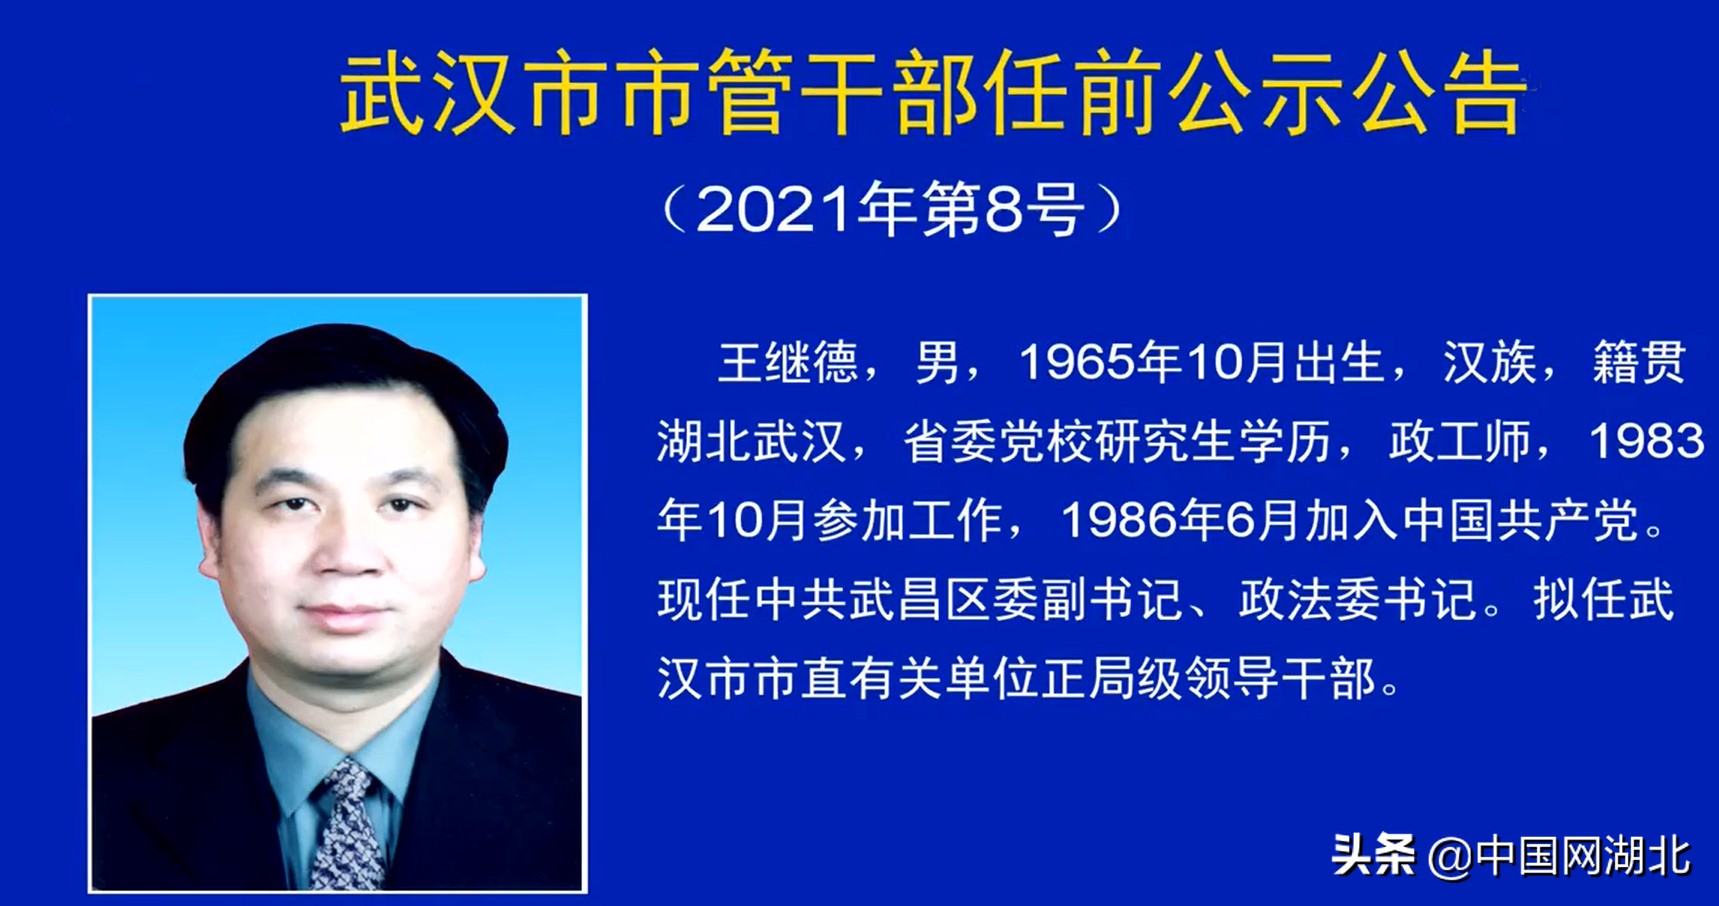 武汉发布最新市管干部任前公示公告(2021年第8号)_中国湖北_中国网